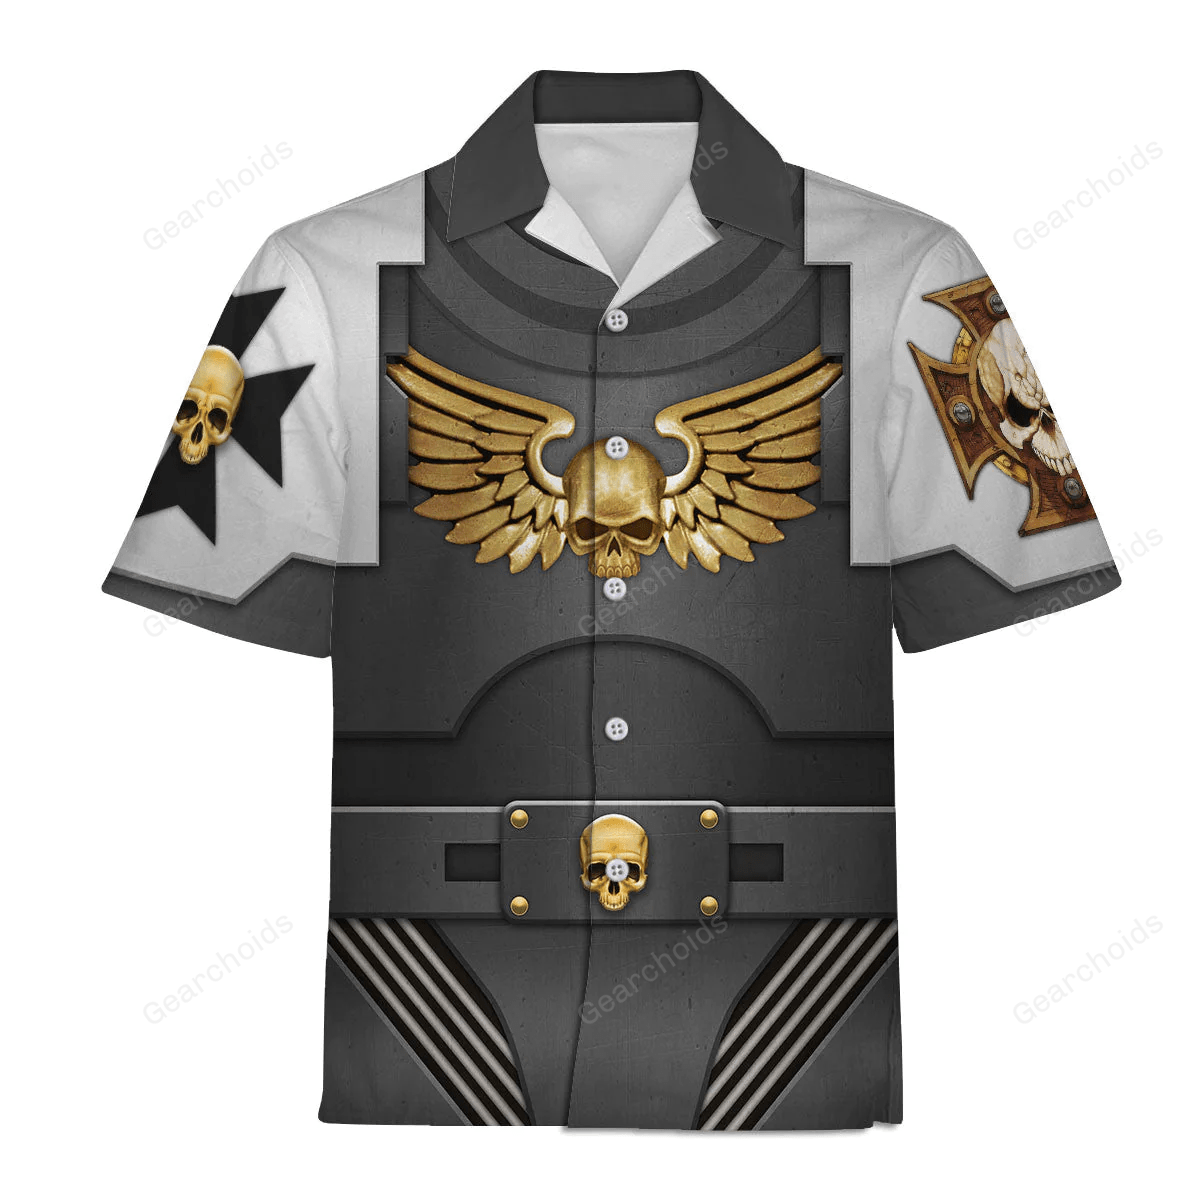 Warhammer Terminator Armor Black Templars - Costume Cosplay Hawaiian Shirt